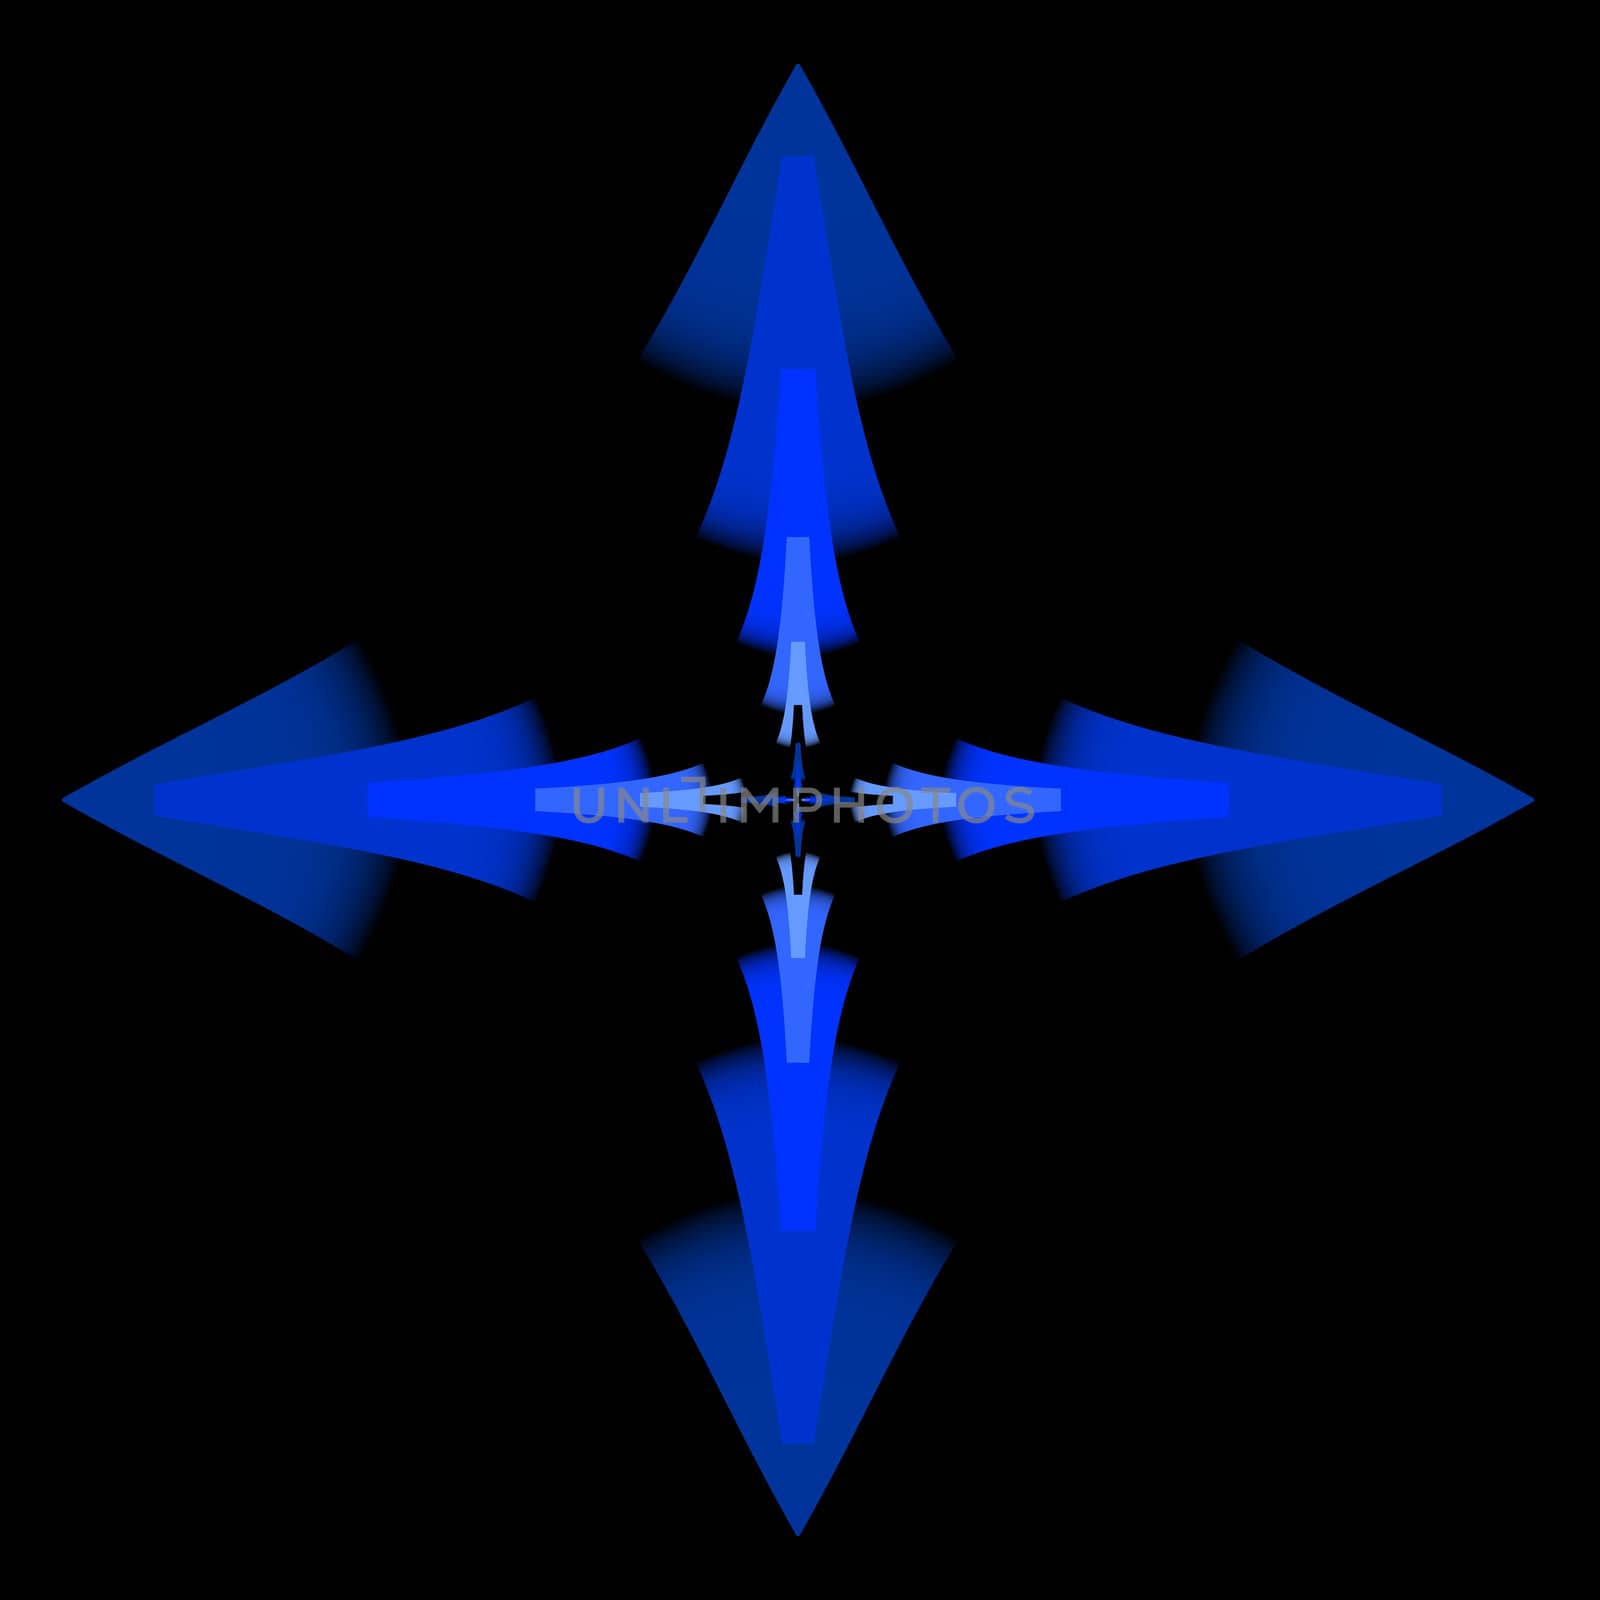 Blue Arrows by patballard